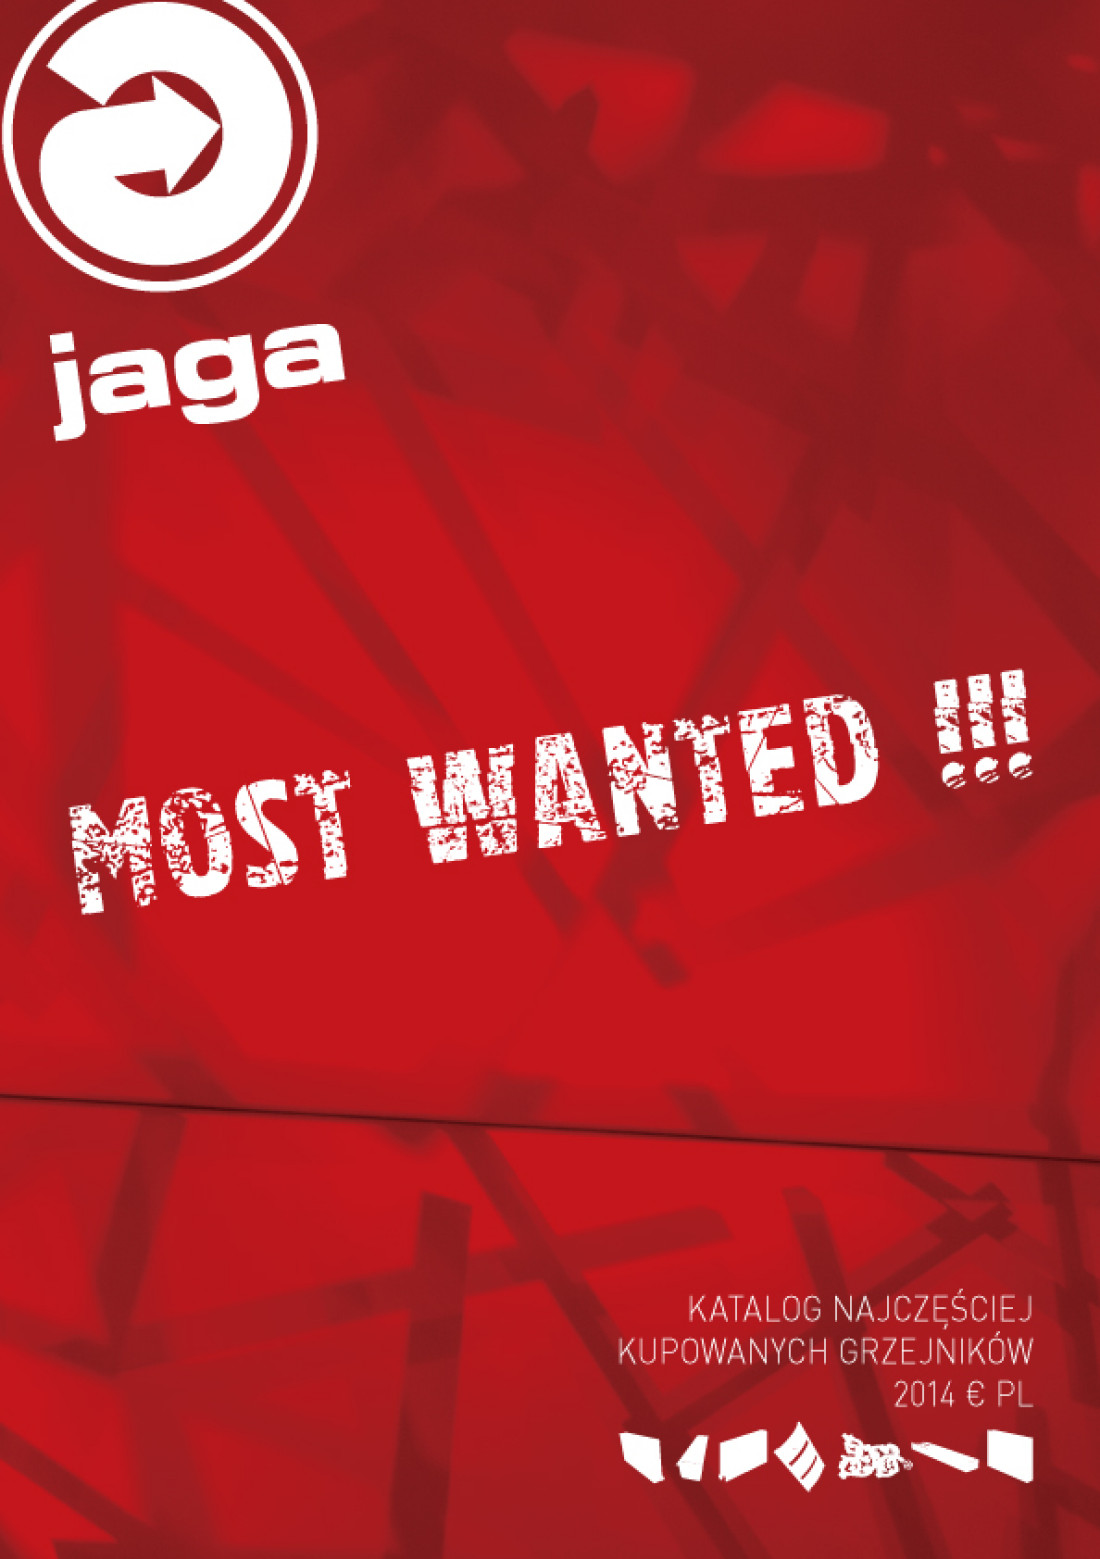 MOST WANTED - katalog grzejników Jaga na 2014 rok